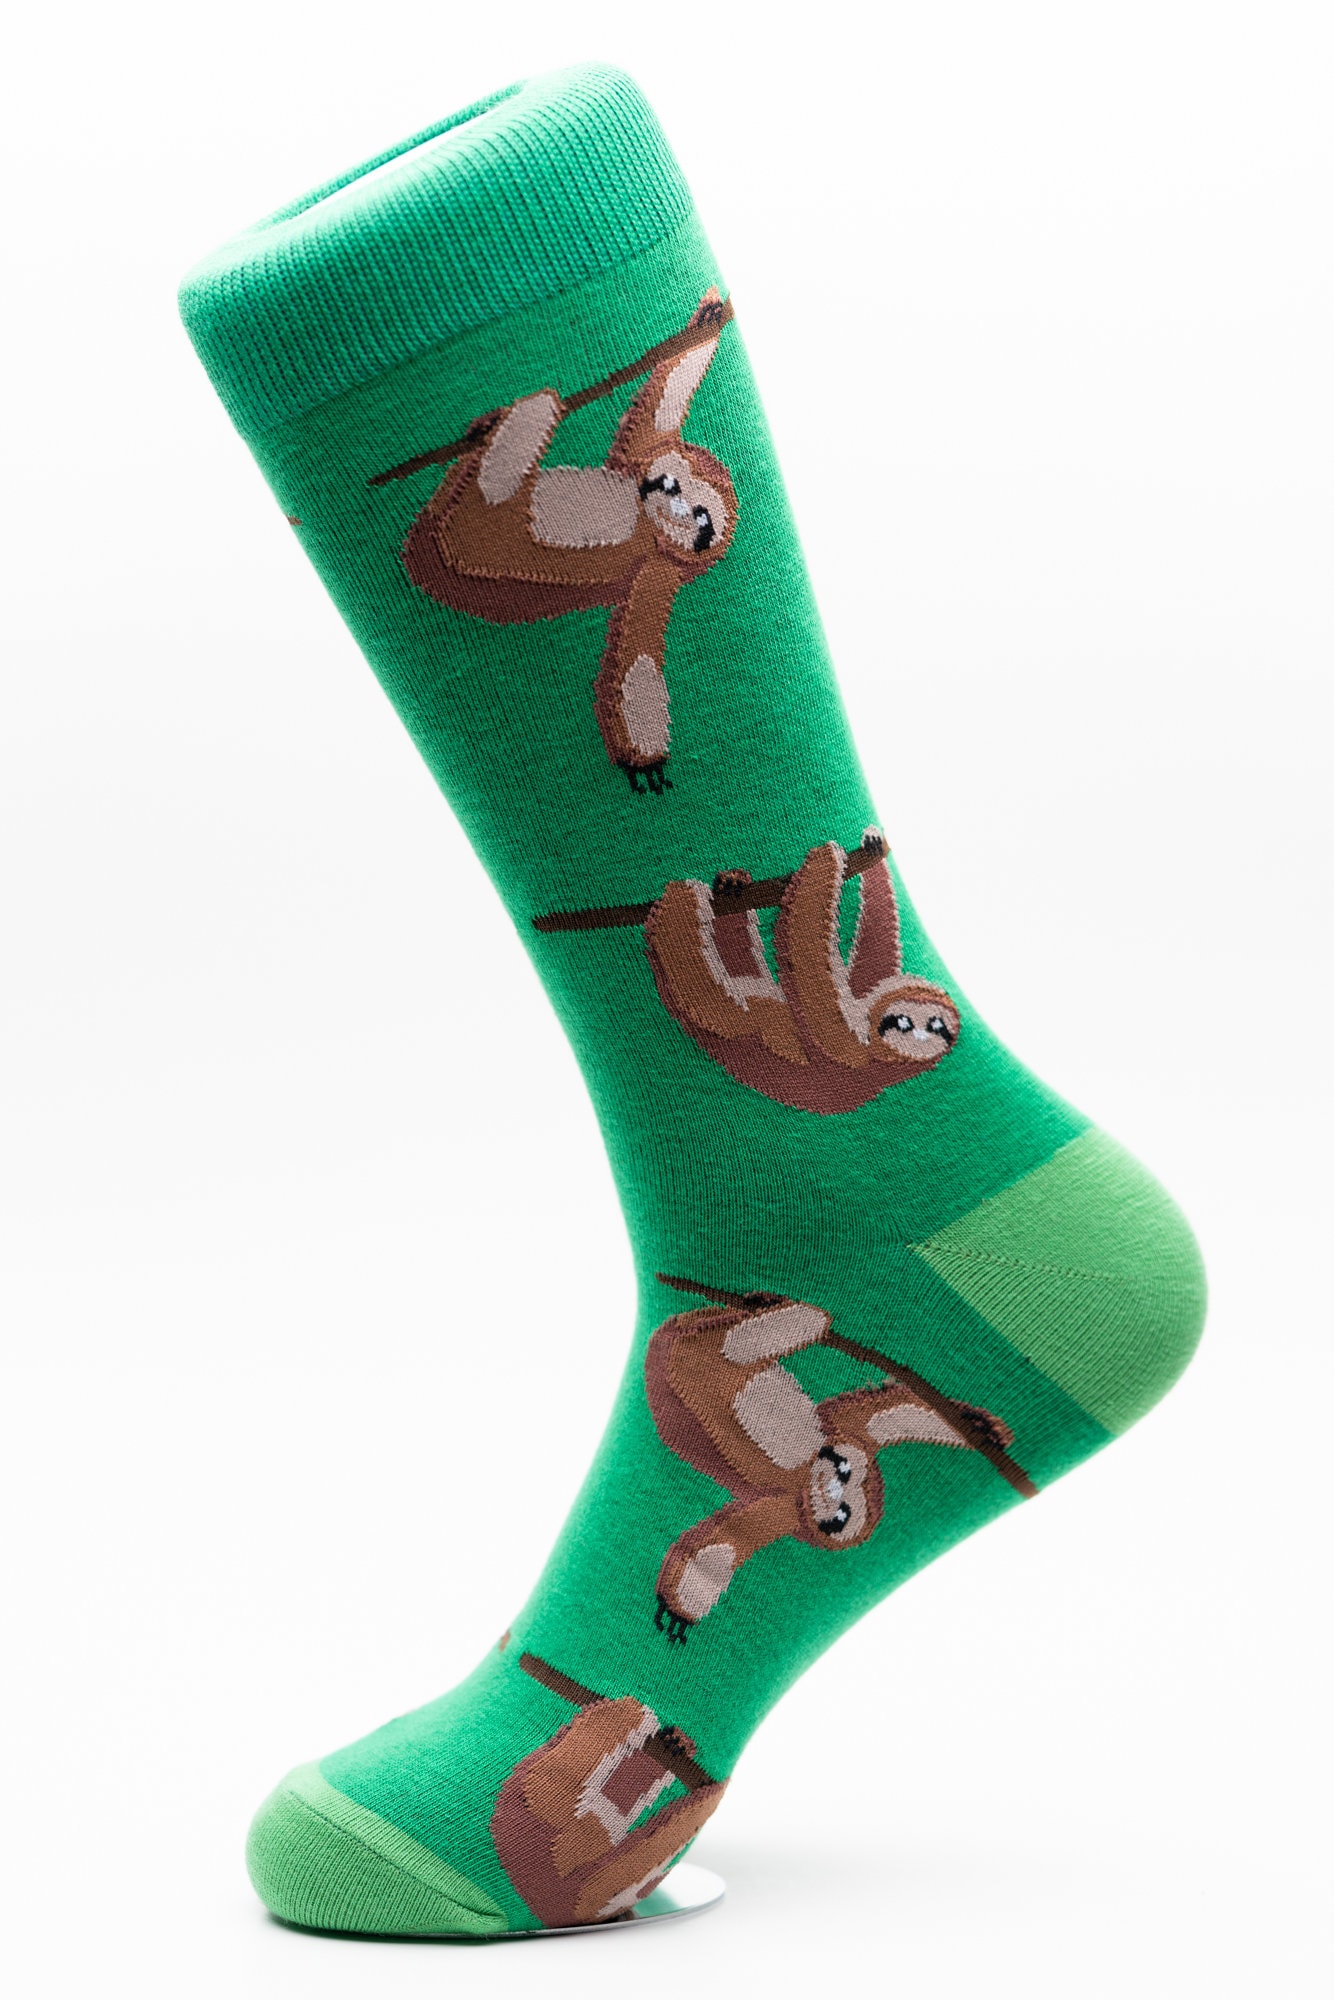 Novelty Curious Sloth Design Socks